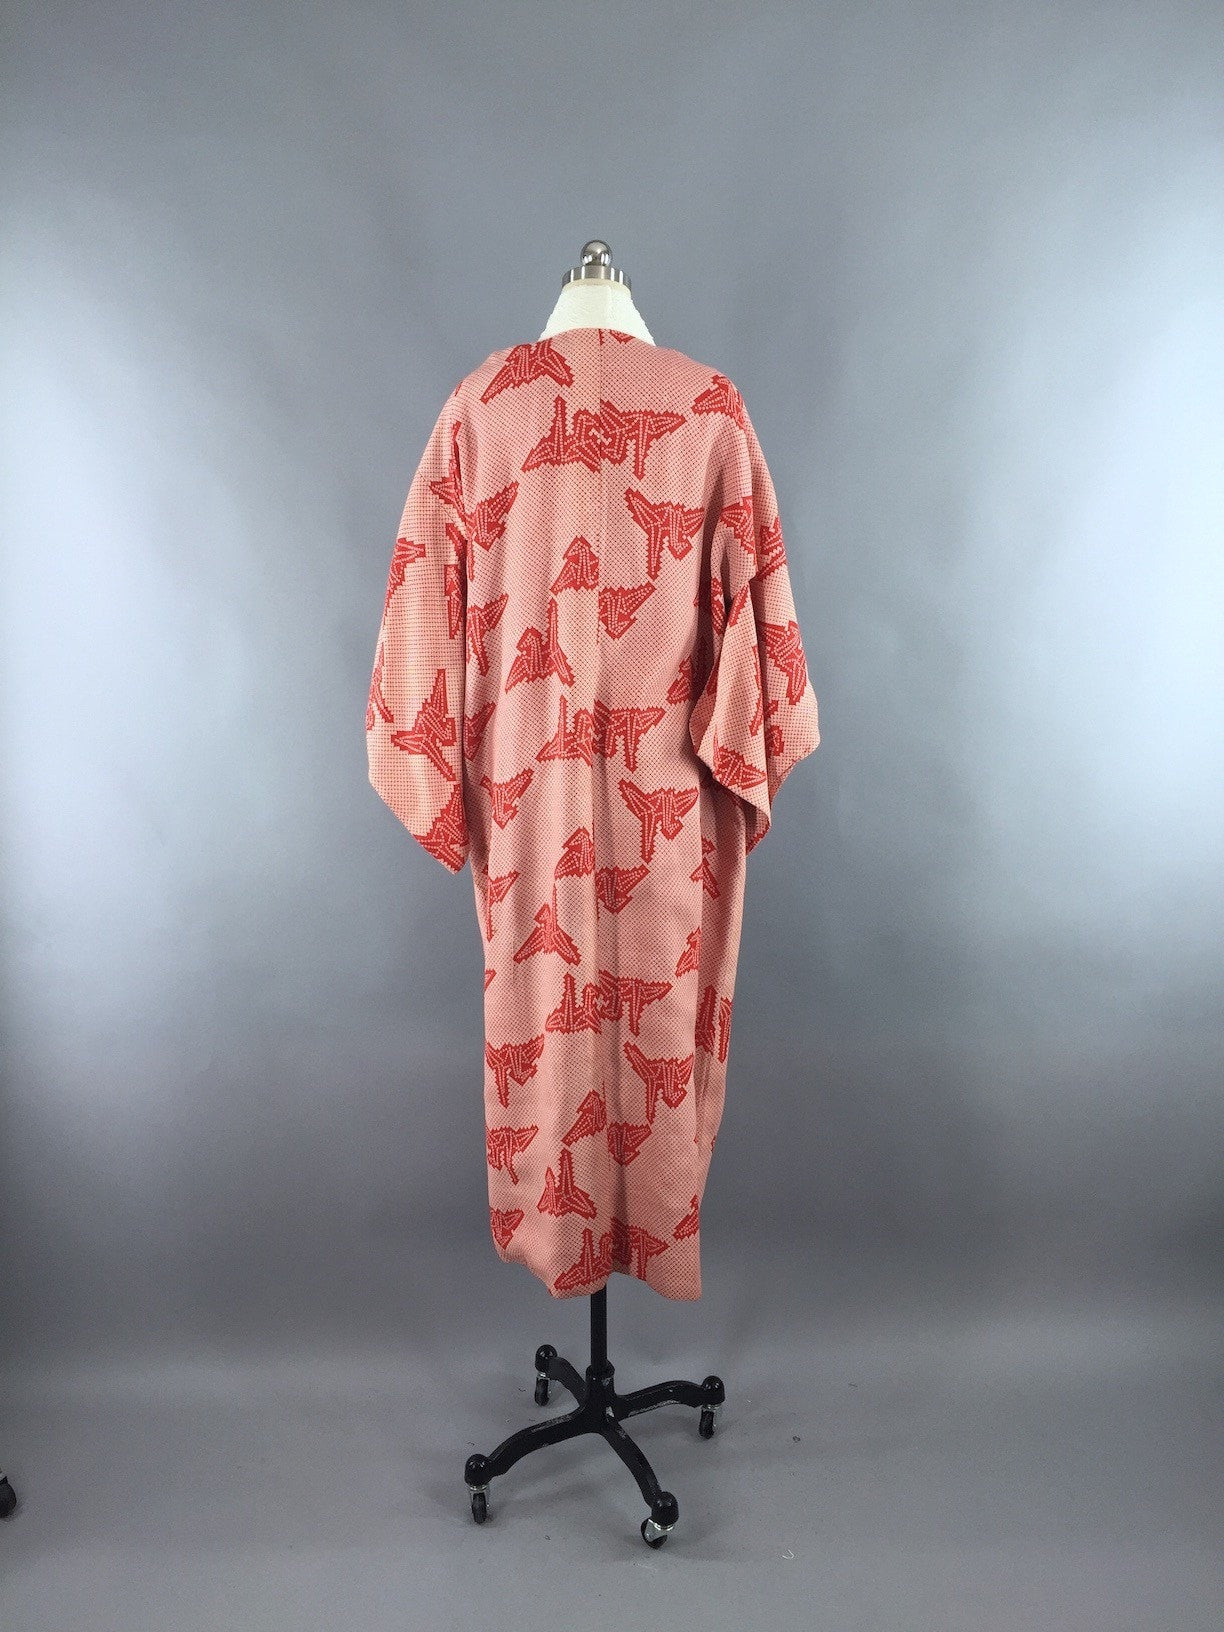 Vintage 1930s Cotton Kimono Robe / Red Crane Origami Print - ThisBlueBird